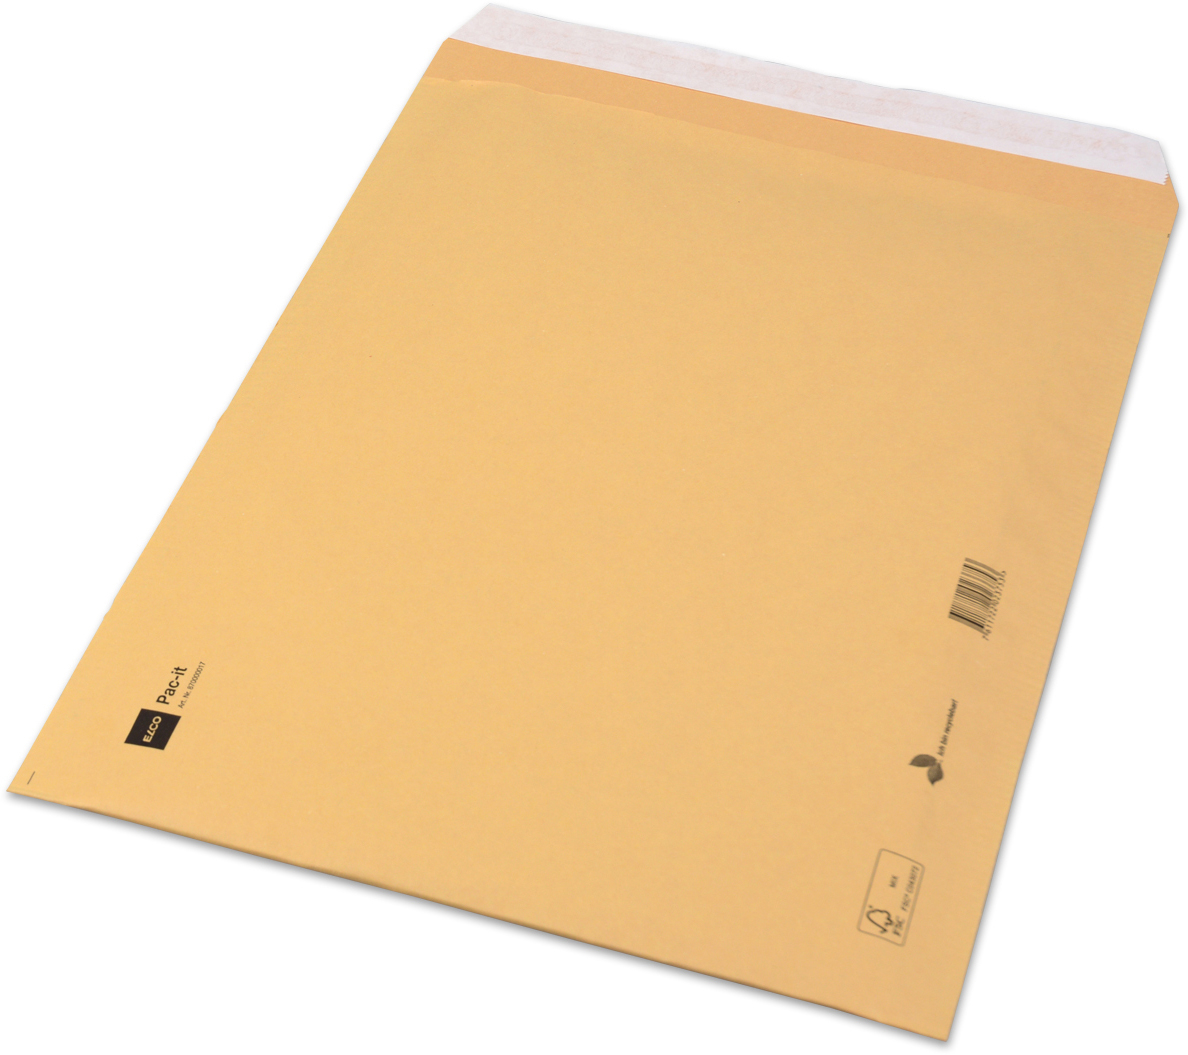 ELCO Pochette en papier 170x225mm 705331 marron, recyclable 20 pcs. marron, recyclable 20 pcs.